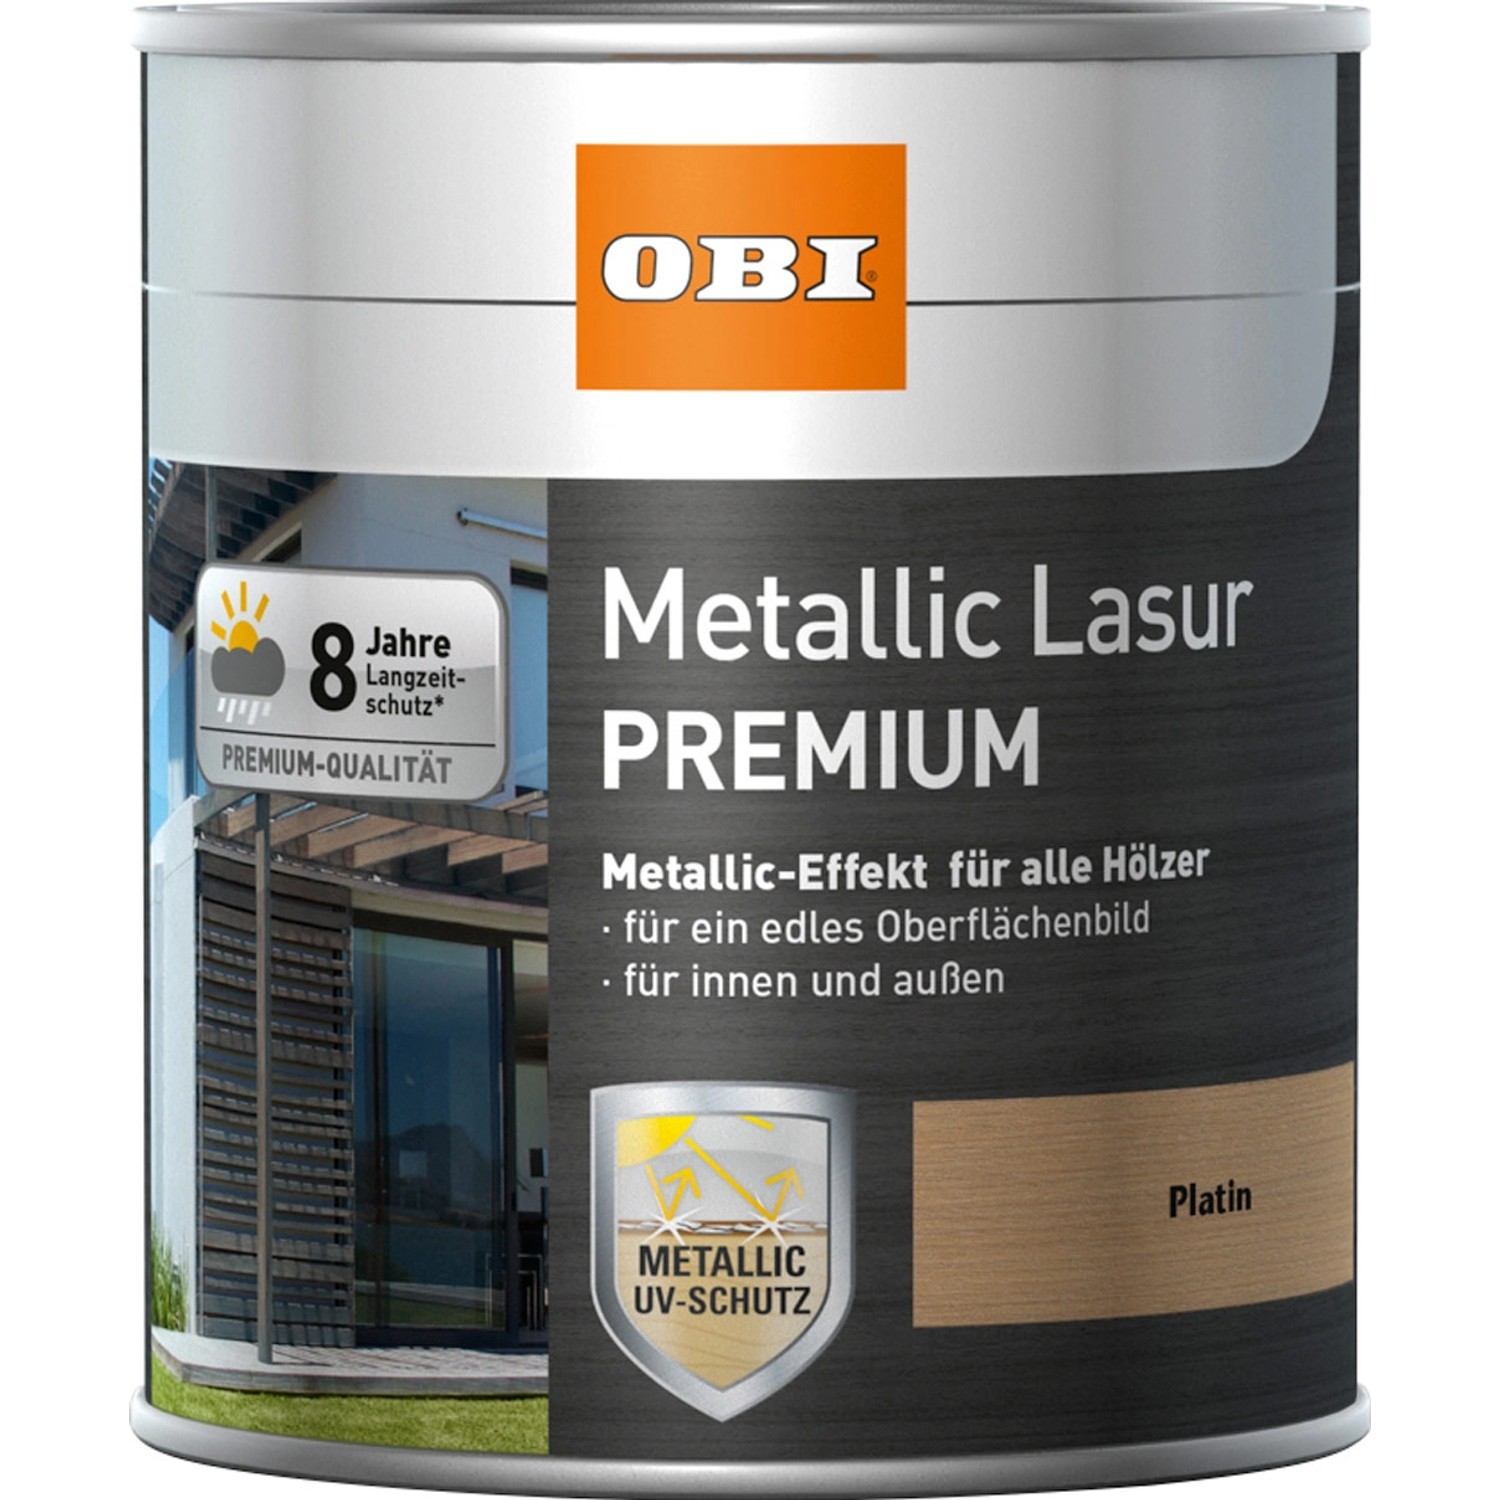 OBI Metallic Lasur Premium Platin 2,5 l von OBI